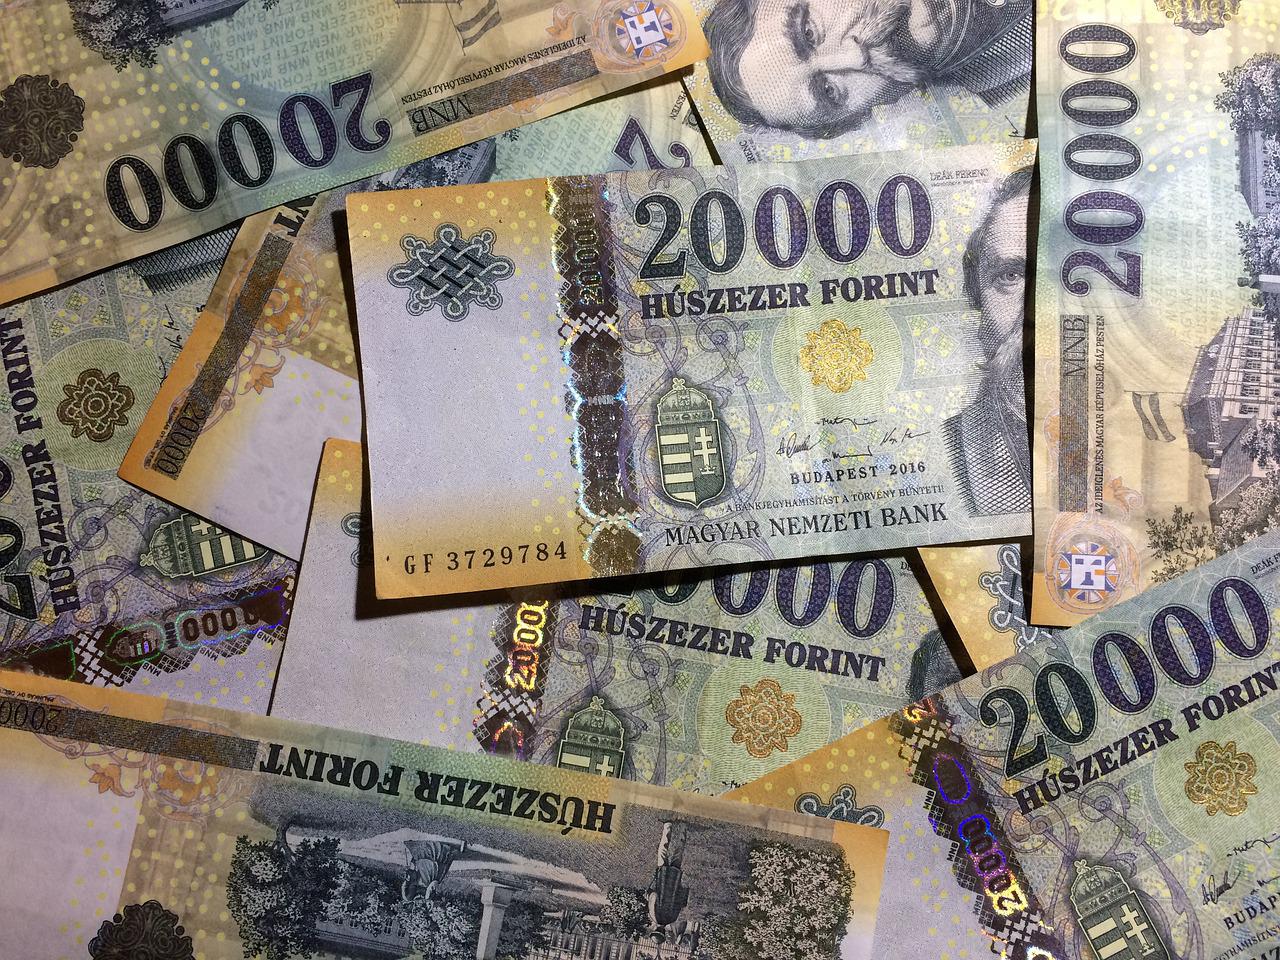 Őrület mit csinálnak a magyarok: Miért tartanak 25.000 milliárdot szabadon készpénzben és bankszámlán?